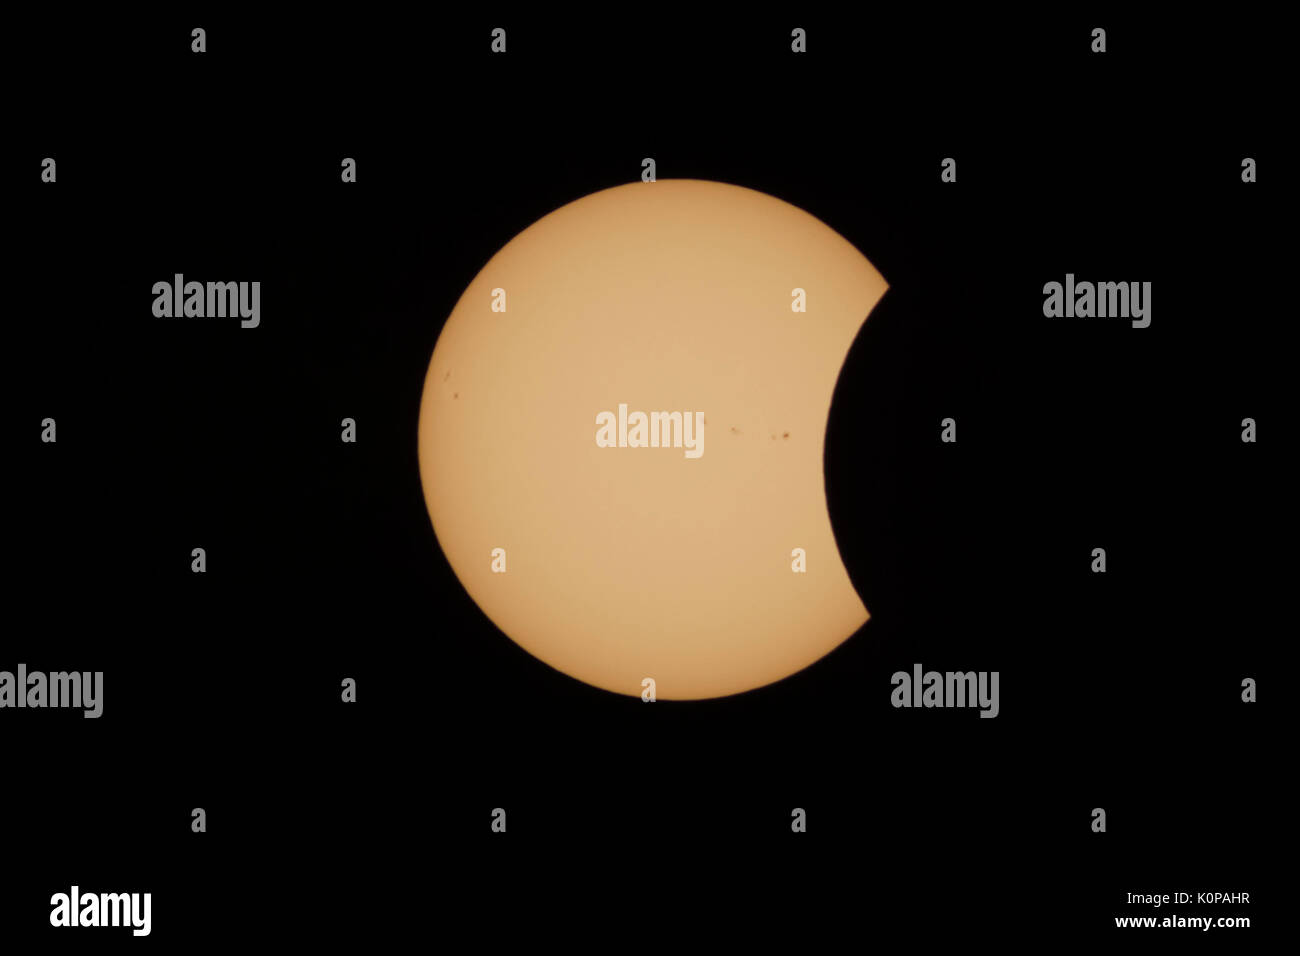 Der Mond beginnt die Sonne in die partielle Sonnenfinsternis Phase nach dem ersten Kontakt während der großen amerikanischen Eclipse am 21. August 2017 zu decken. Stockfoto